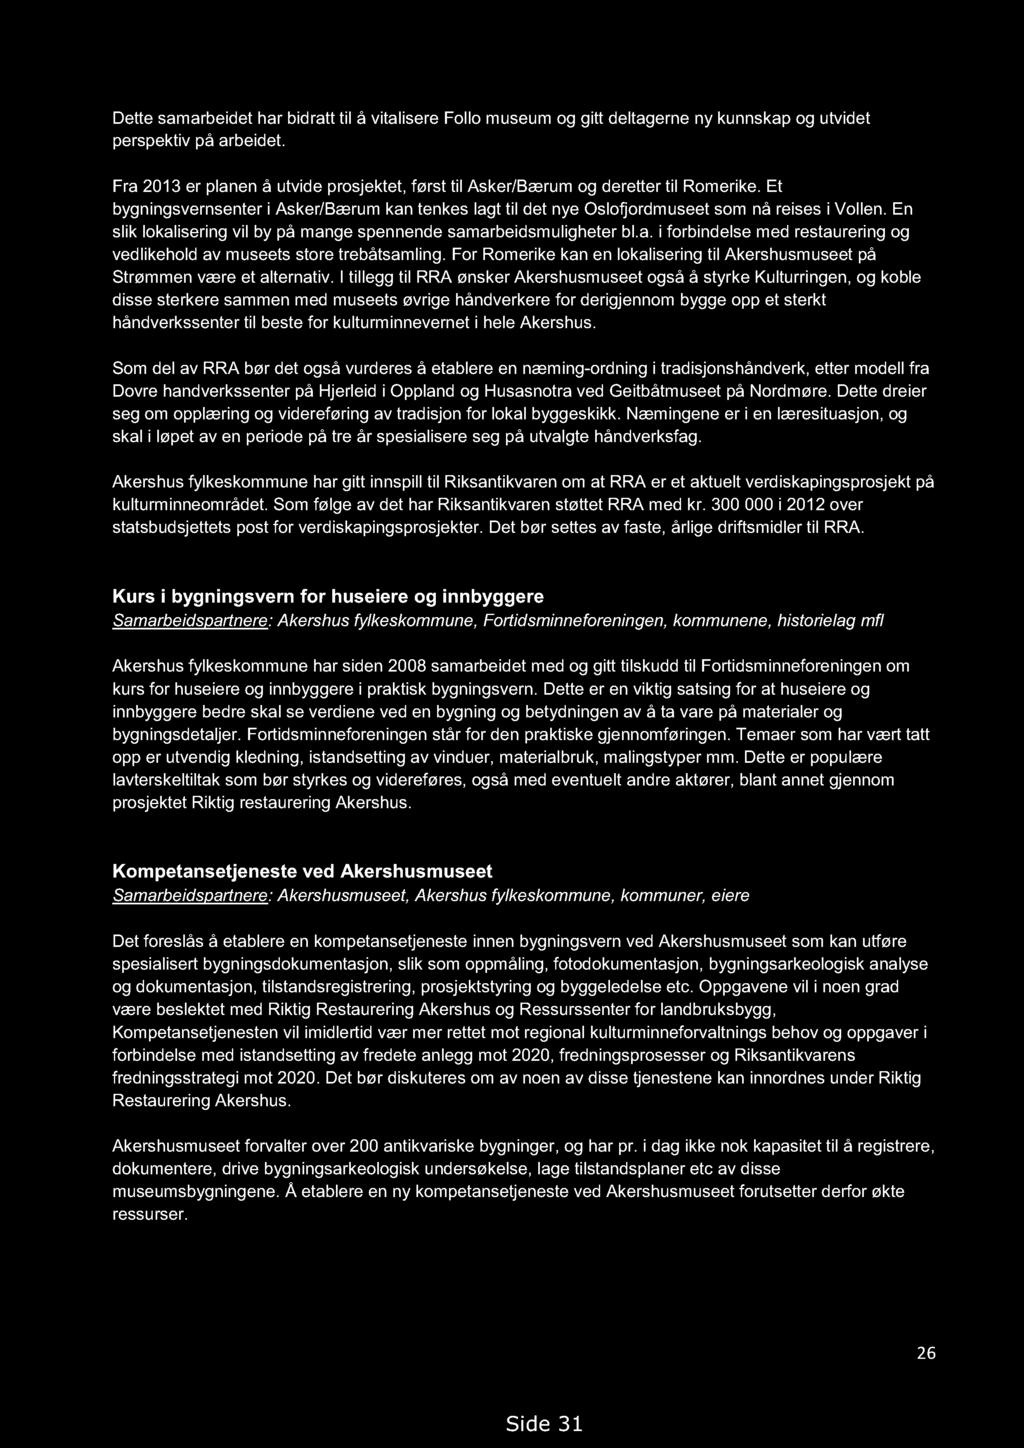 Handlingsprogram for kulturminner i Akershus 2013-2018. Høringsutkast 14.09.2012, med endringer 19.02.